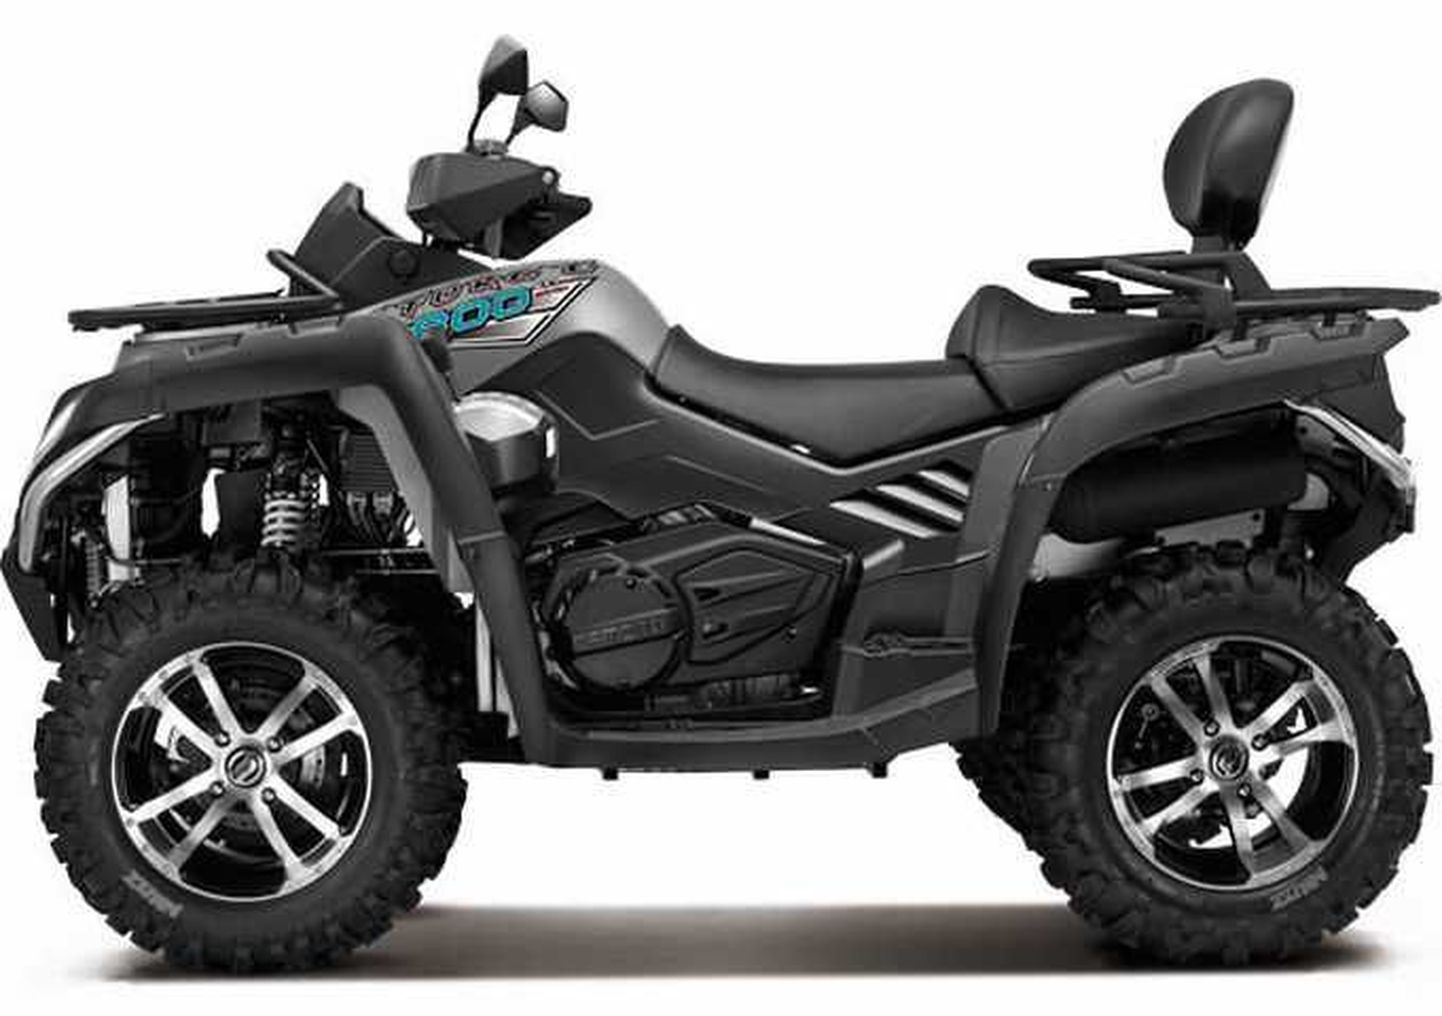 Nõva motoklubilt varastatud ATV mudel.